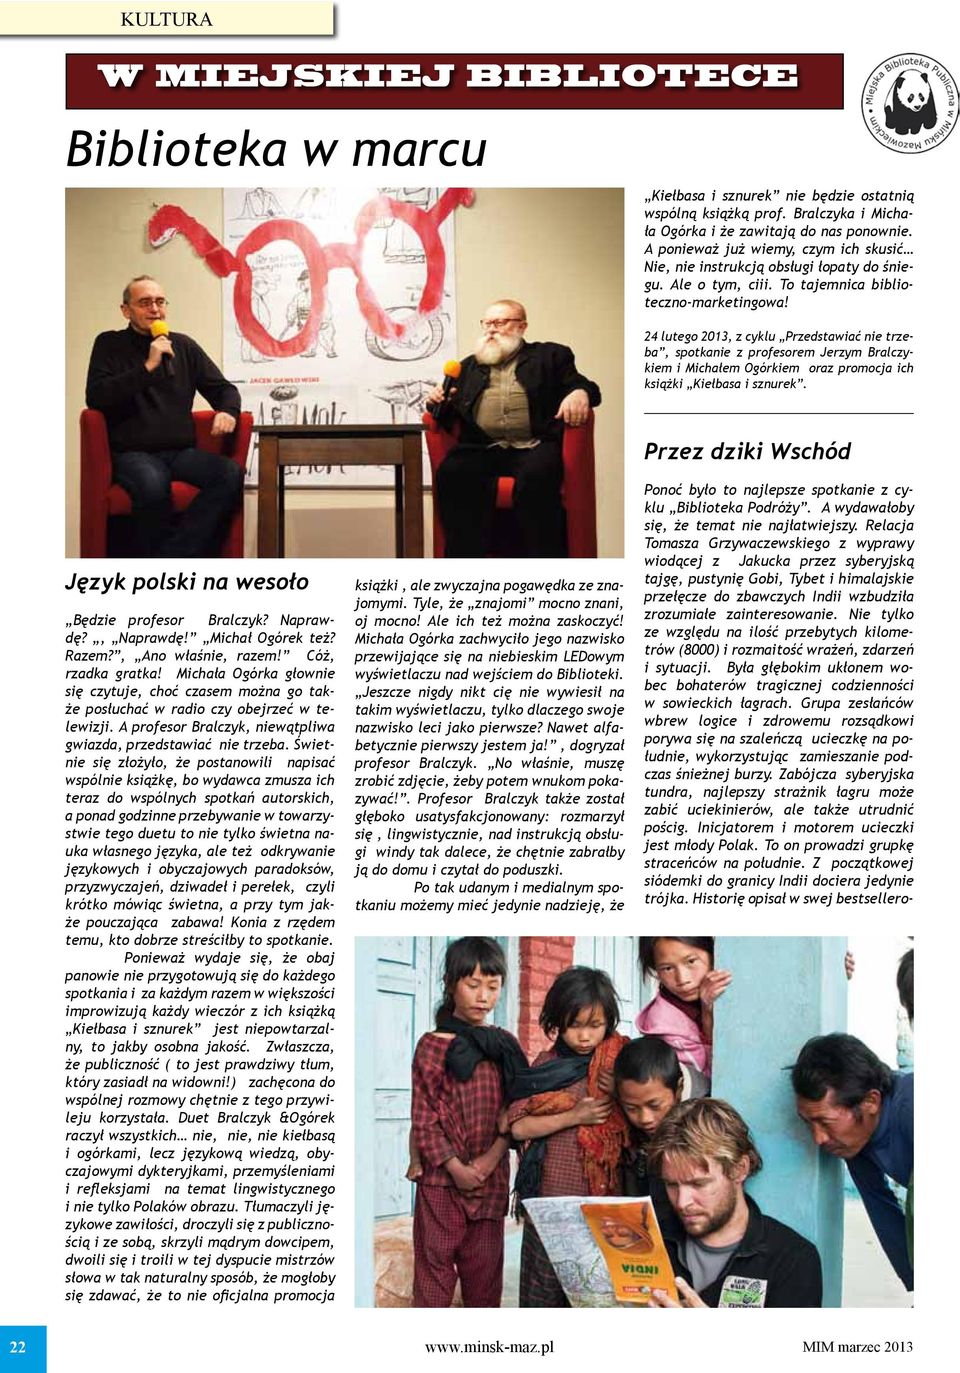 24 lutego 2013, z cyklu Przedstawiać nie trzeba, spotkanie z profesorem Jerzym Bralczykiem i Michałem Ogórkiem oraz promocja ich książki Kiełbasa i sznurek.